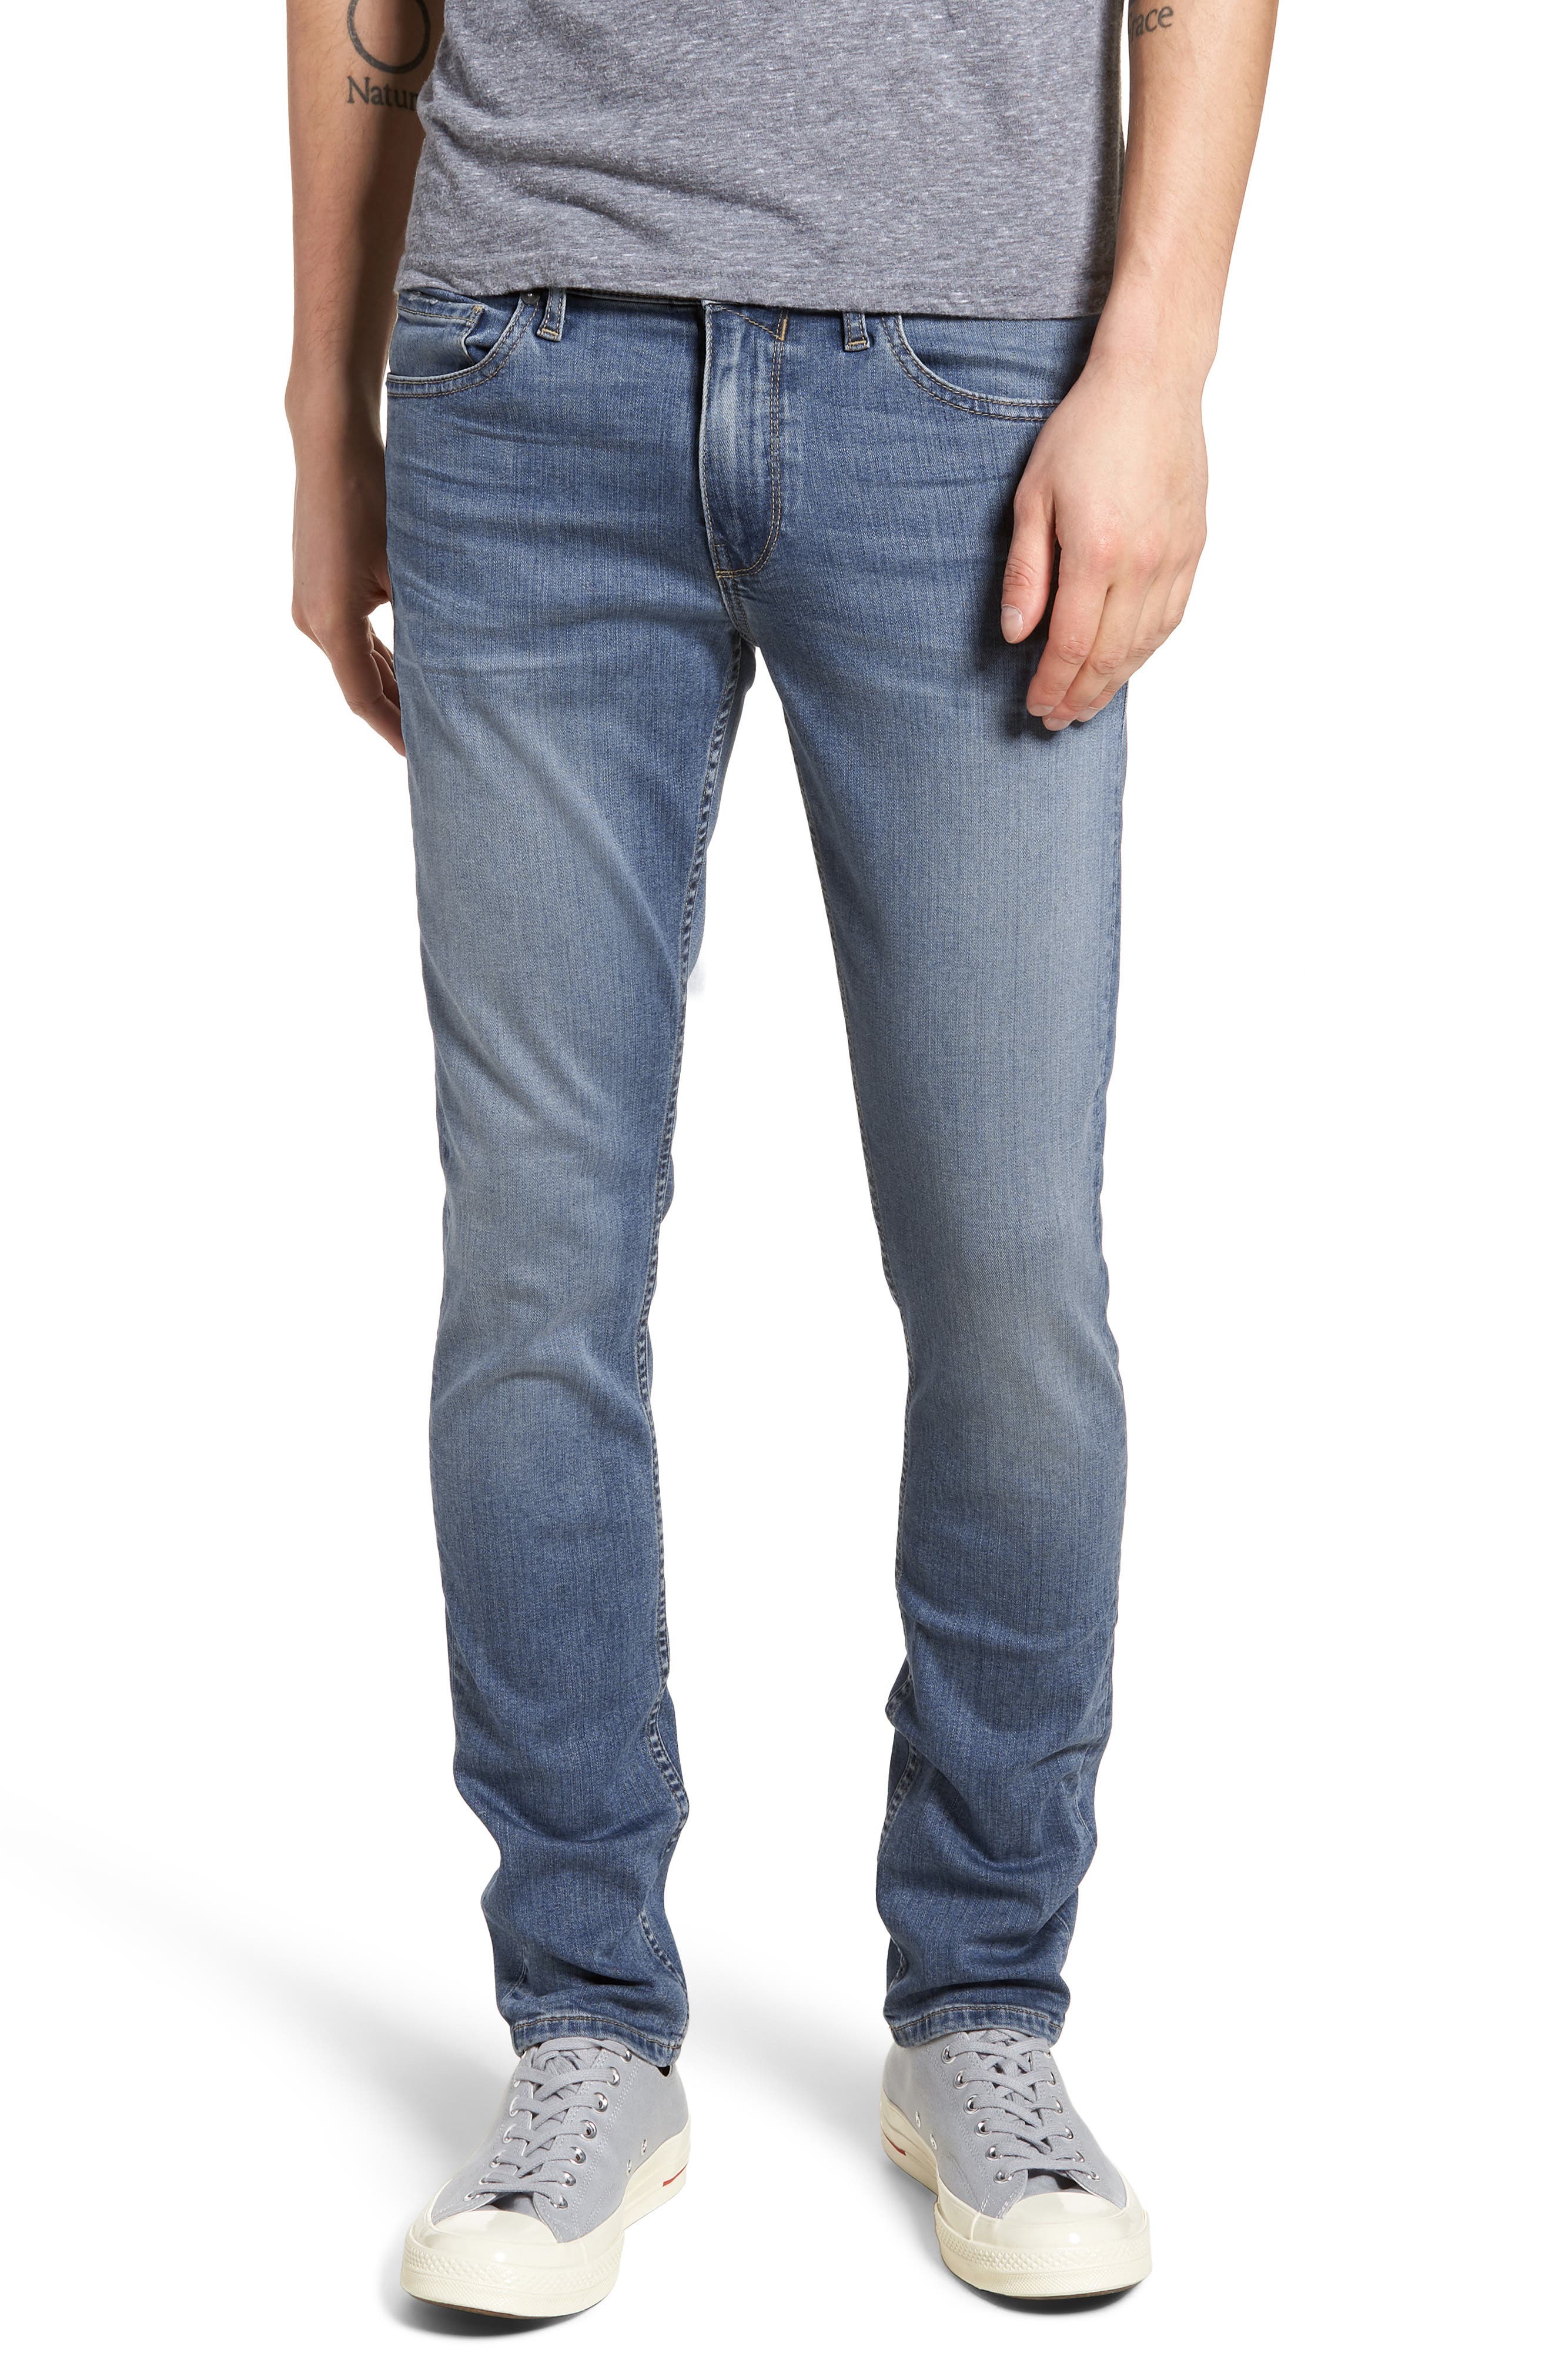 paige croft jeans